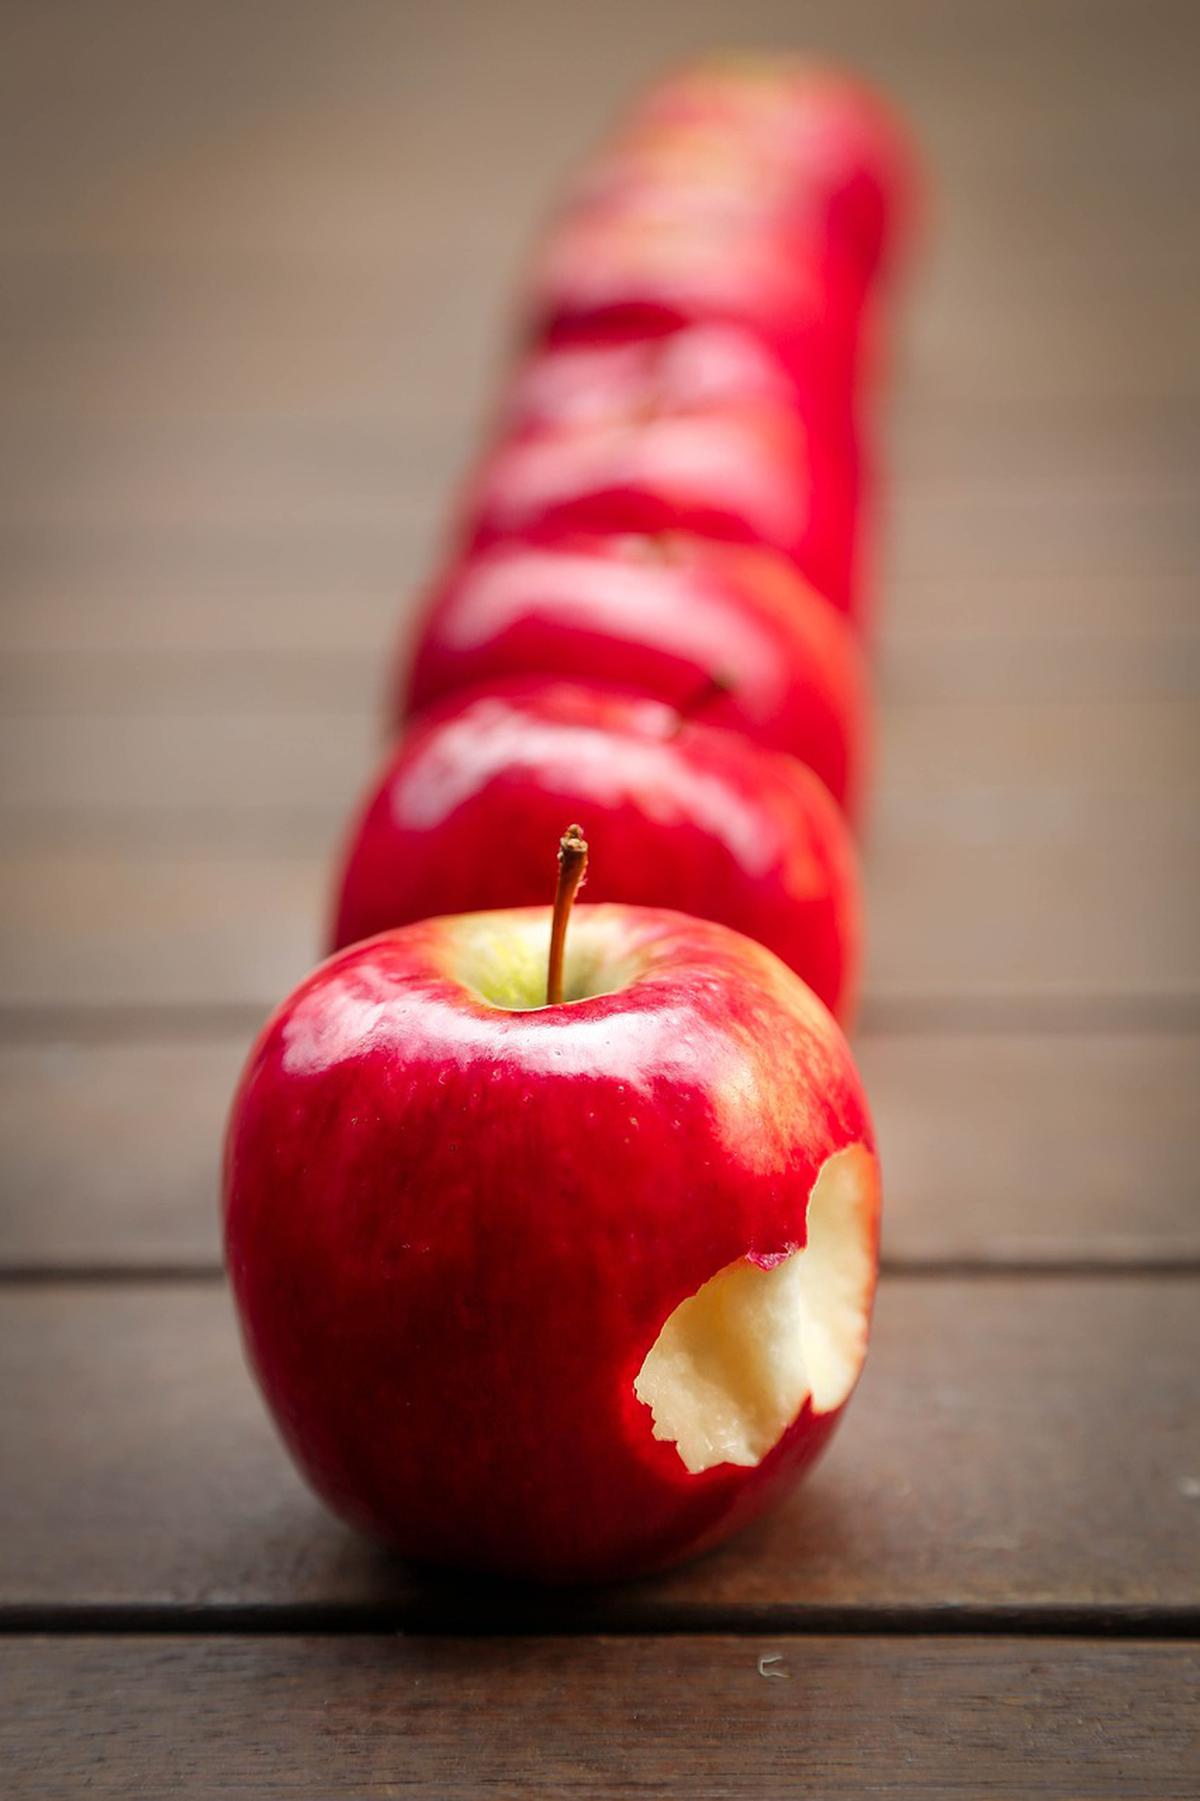 Manzana | La manzana en tus sueños tiene diferentes significados (pixabay.com).